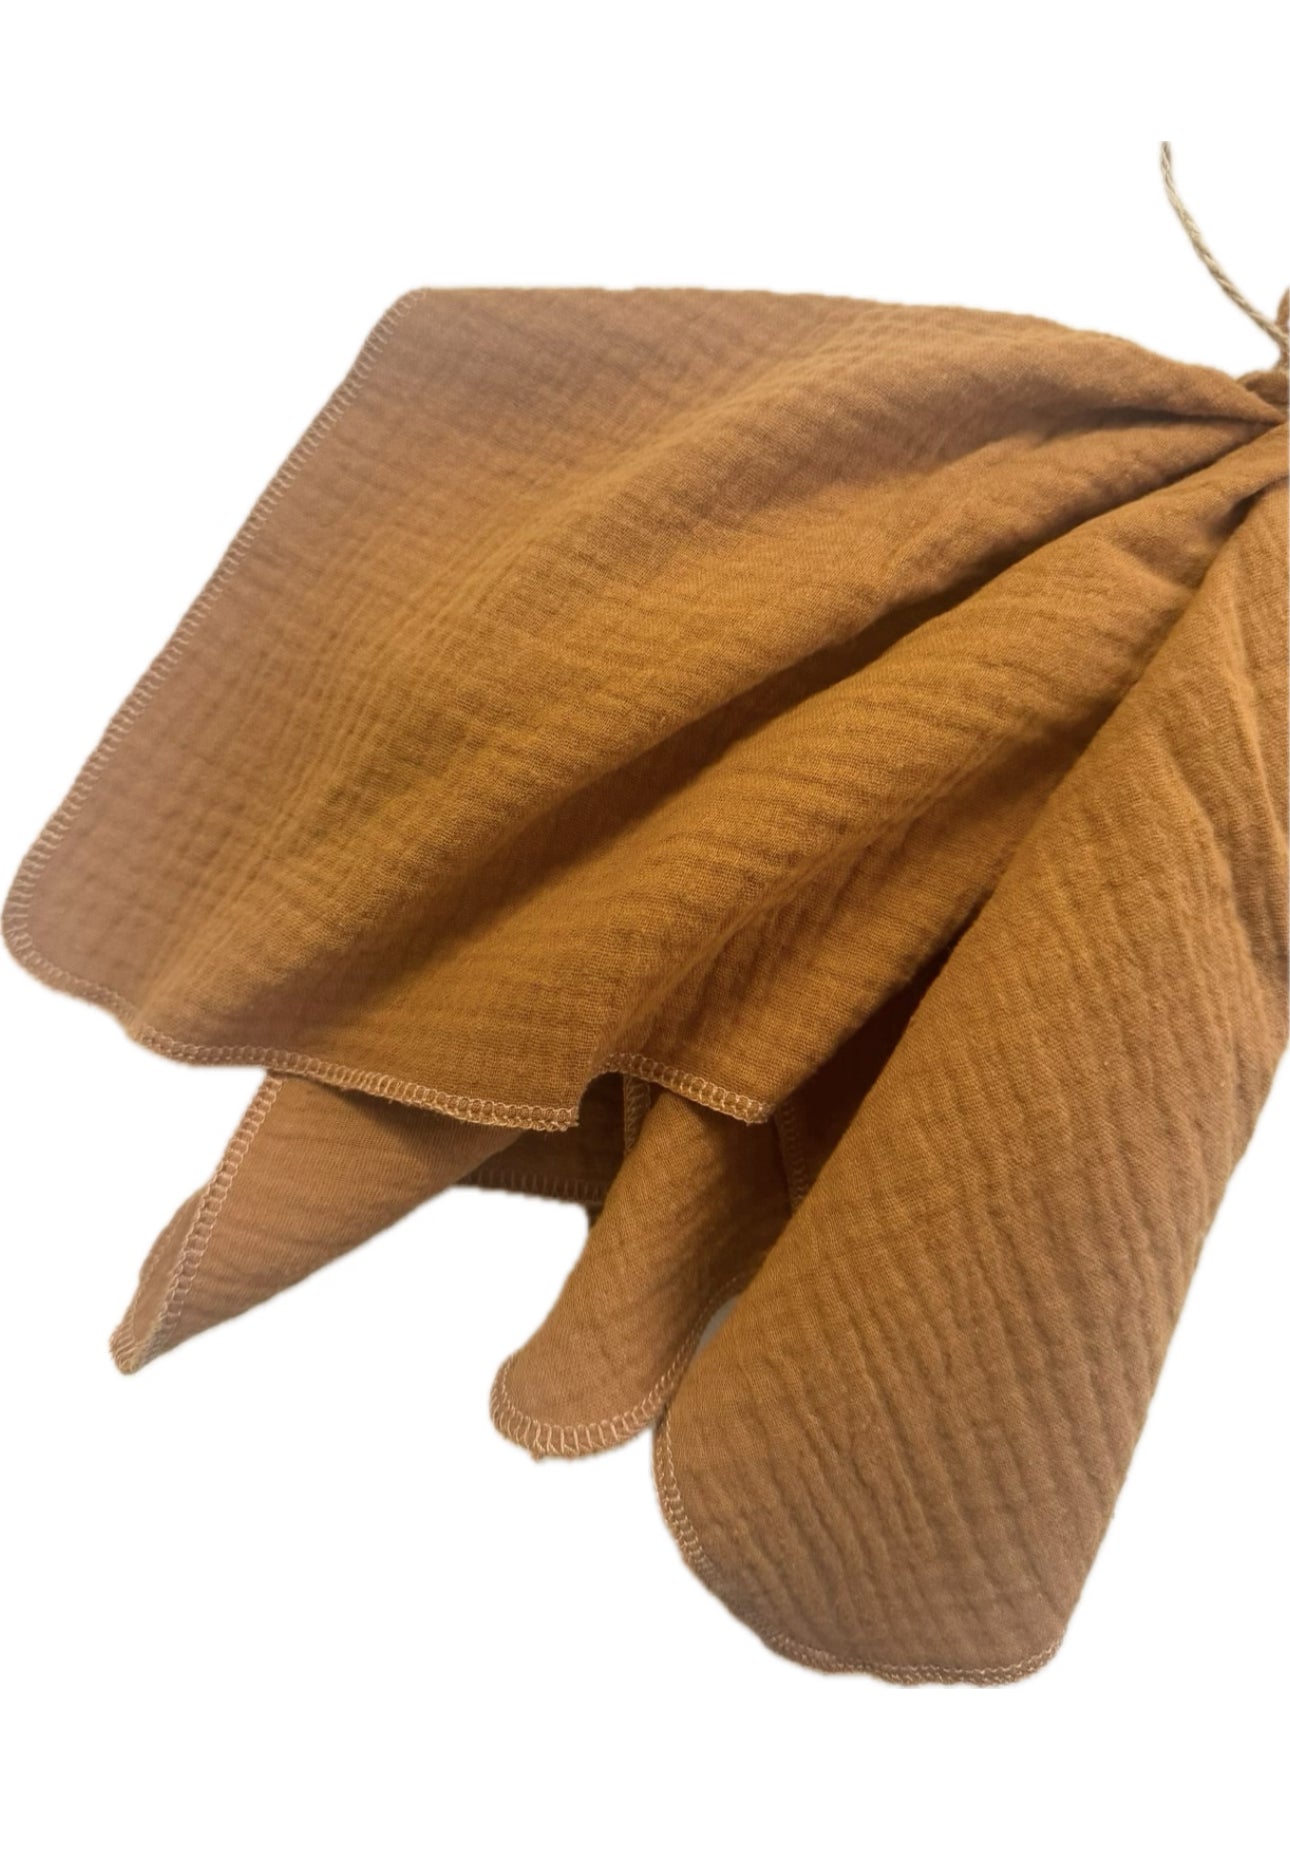 Serviette aus Musselin | 43cmx43cm | Öko Tex 100 | 100% Baumwolle